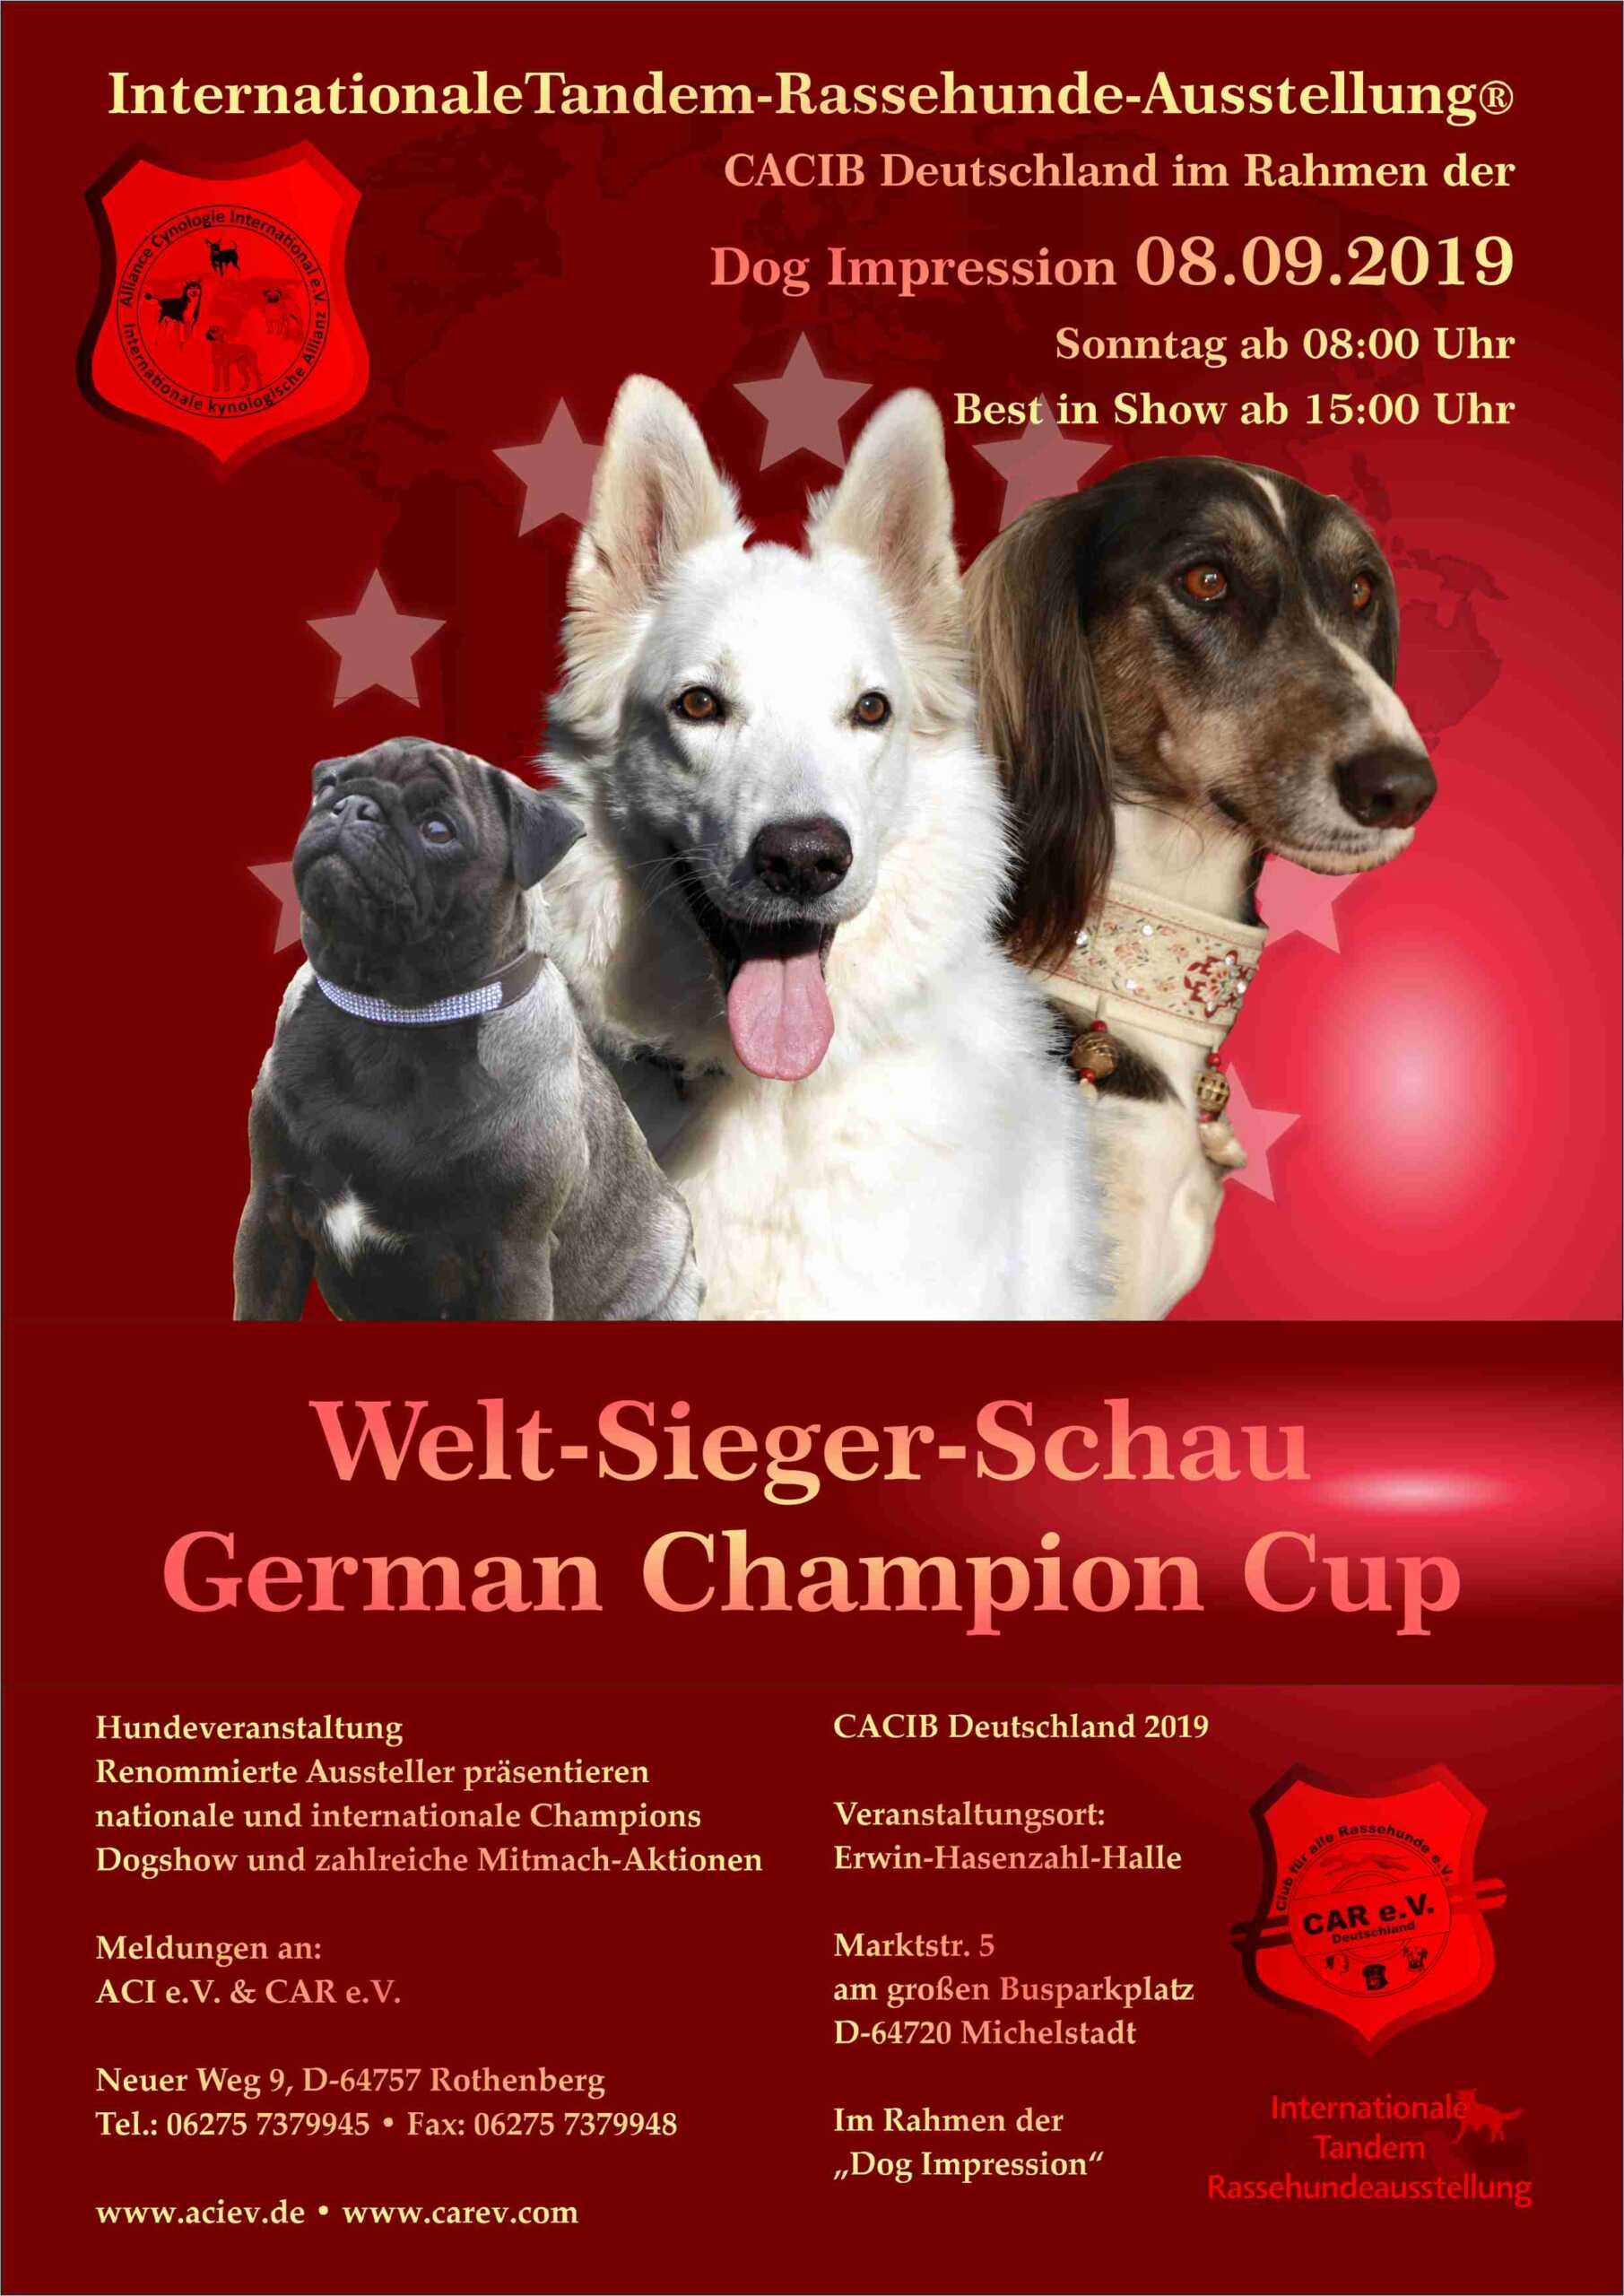 Welt-Sieger-Schau German Champion Cup 08.09.2019